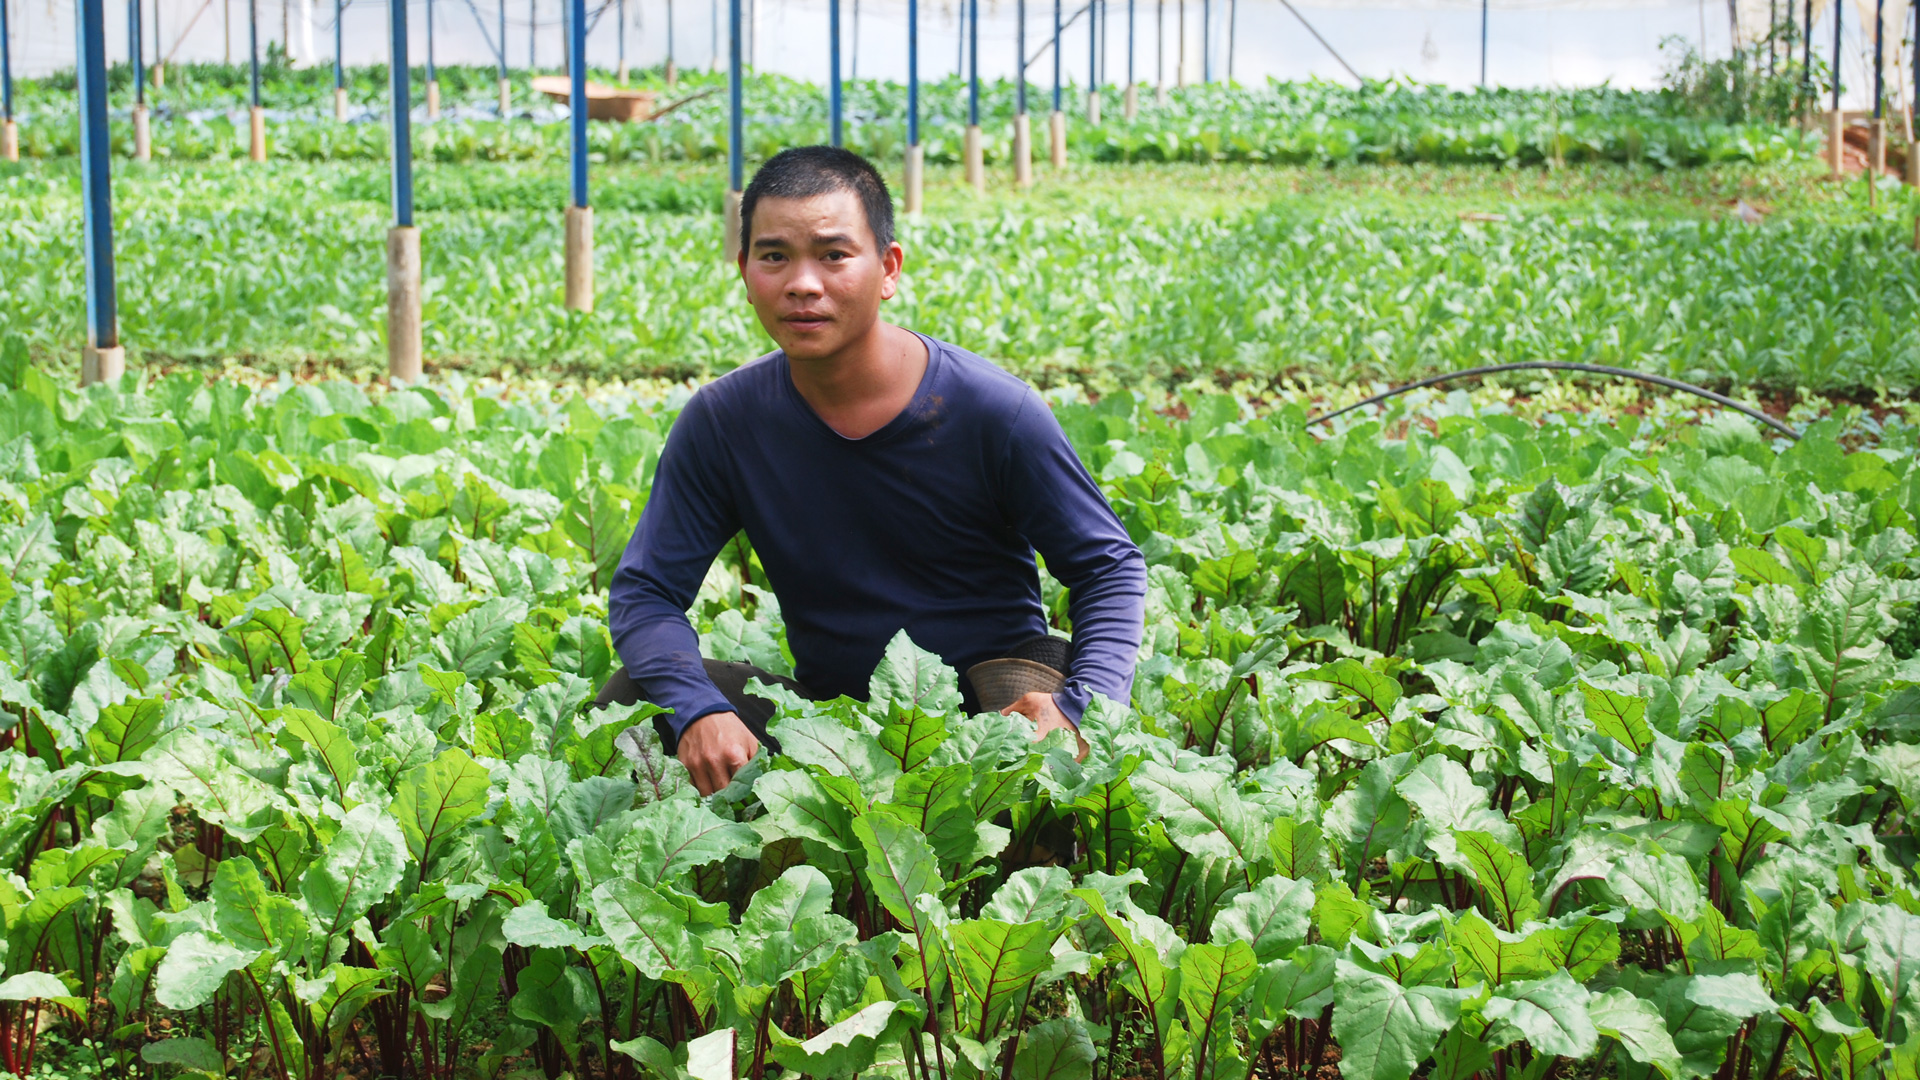  Mỗi năm phân loại gần 2,7 triệu tấn phụ phẩm, chất thải từ sản xuất, chăn nuôi,
sơ chế, chế biến nông sản trong tỉnh Lâm Đồng